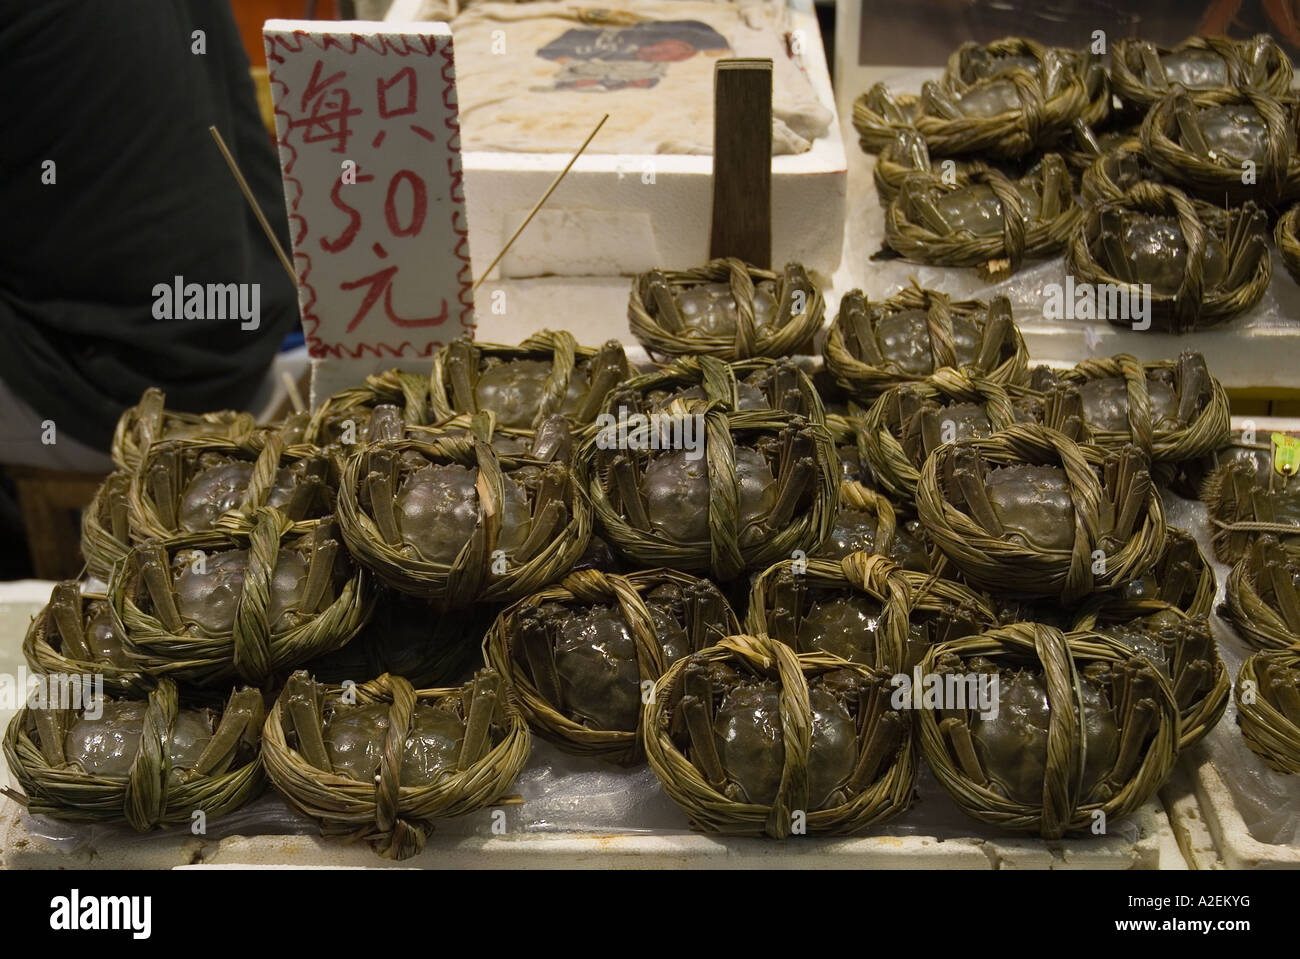 dh North point Pier marché NORTH POINT HONG KONG Strung des crabes en direct à vendre des étales de marché mouillées affichent fermes marchés de poissons de la chine de crabe frais lié Banque D'Images